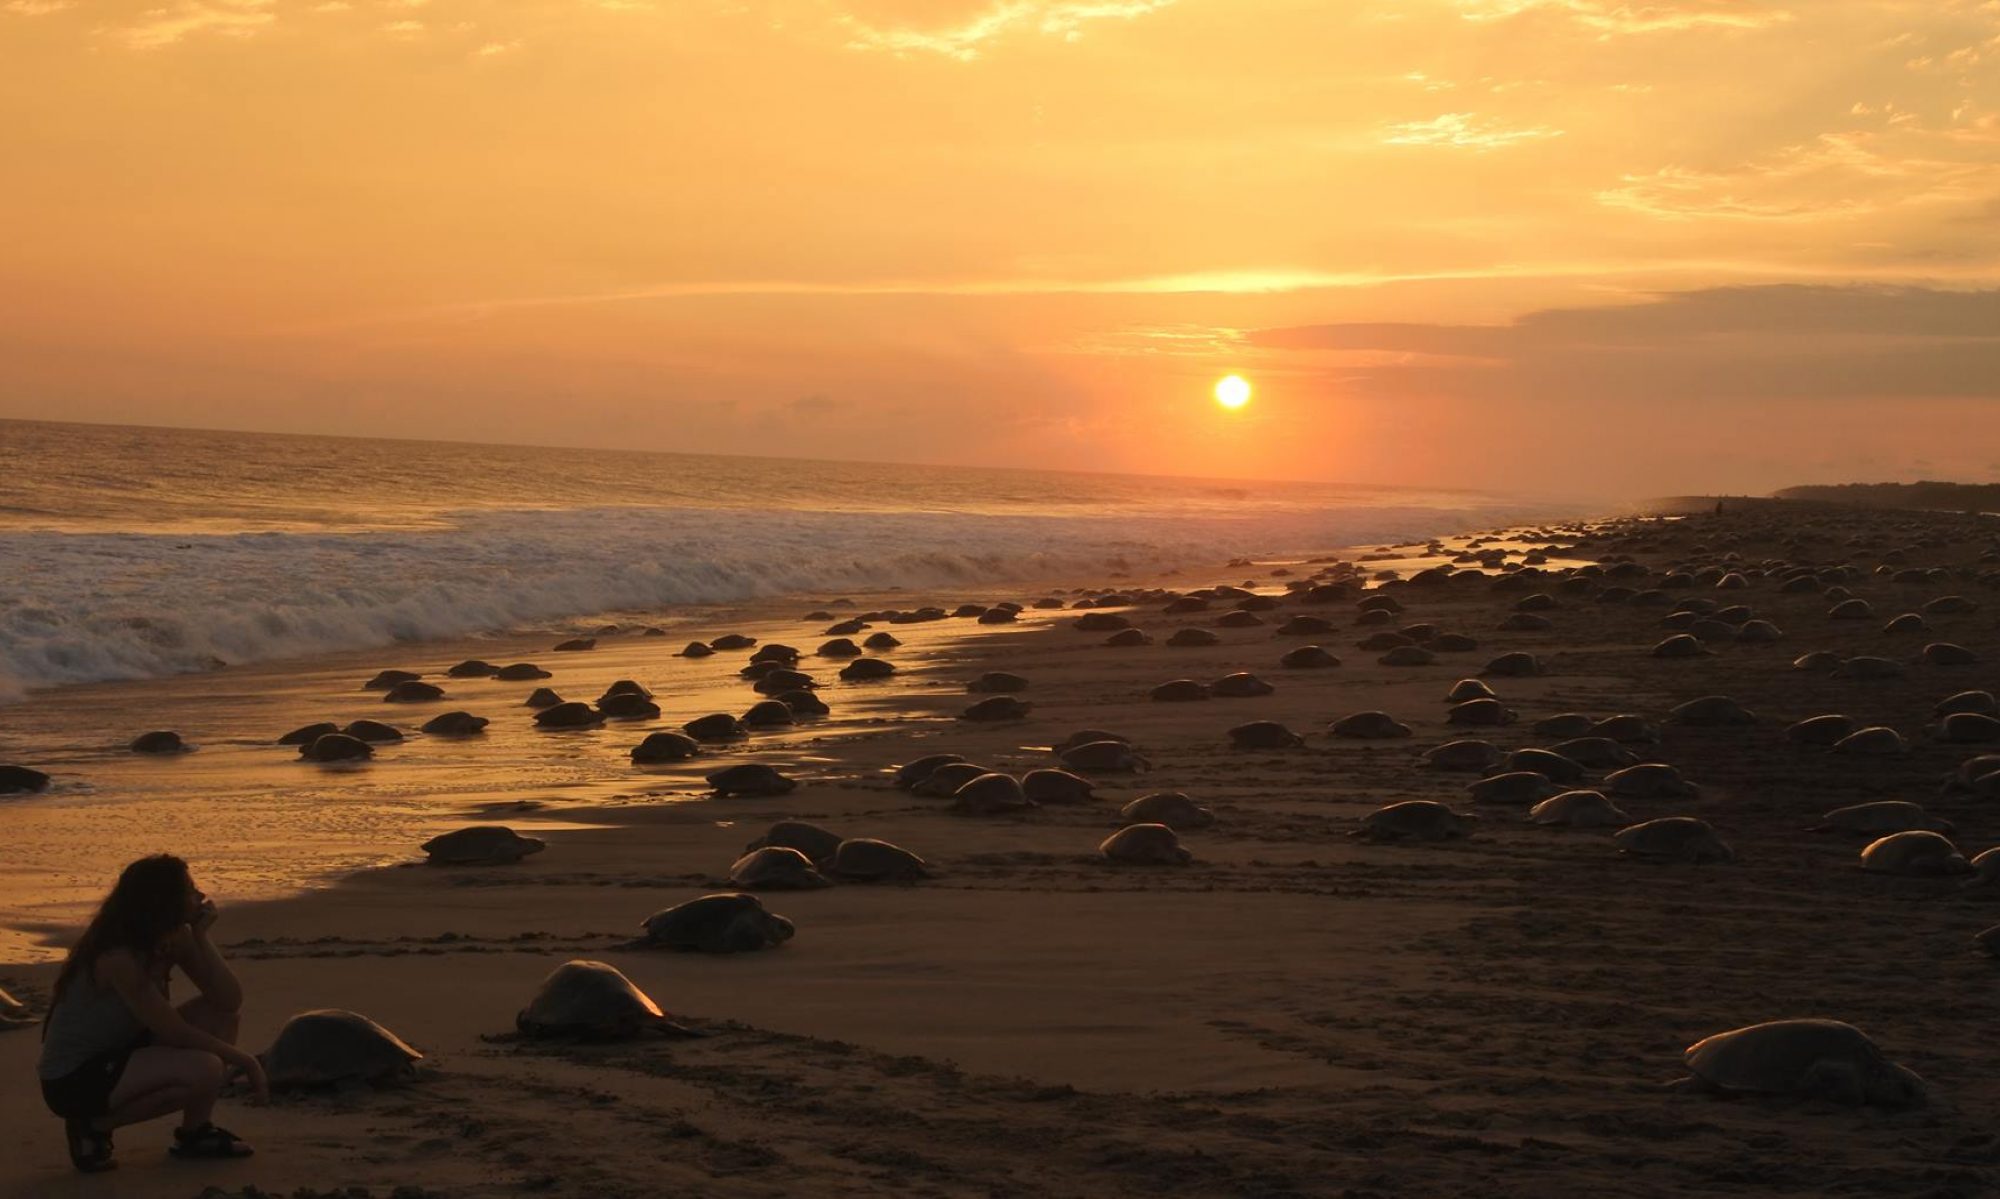 playa en Mexico para ver tortugas marinas